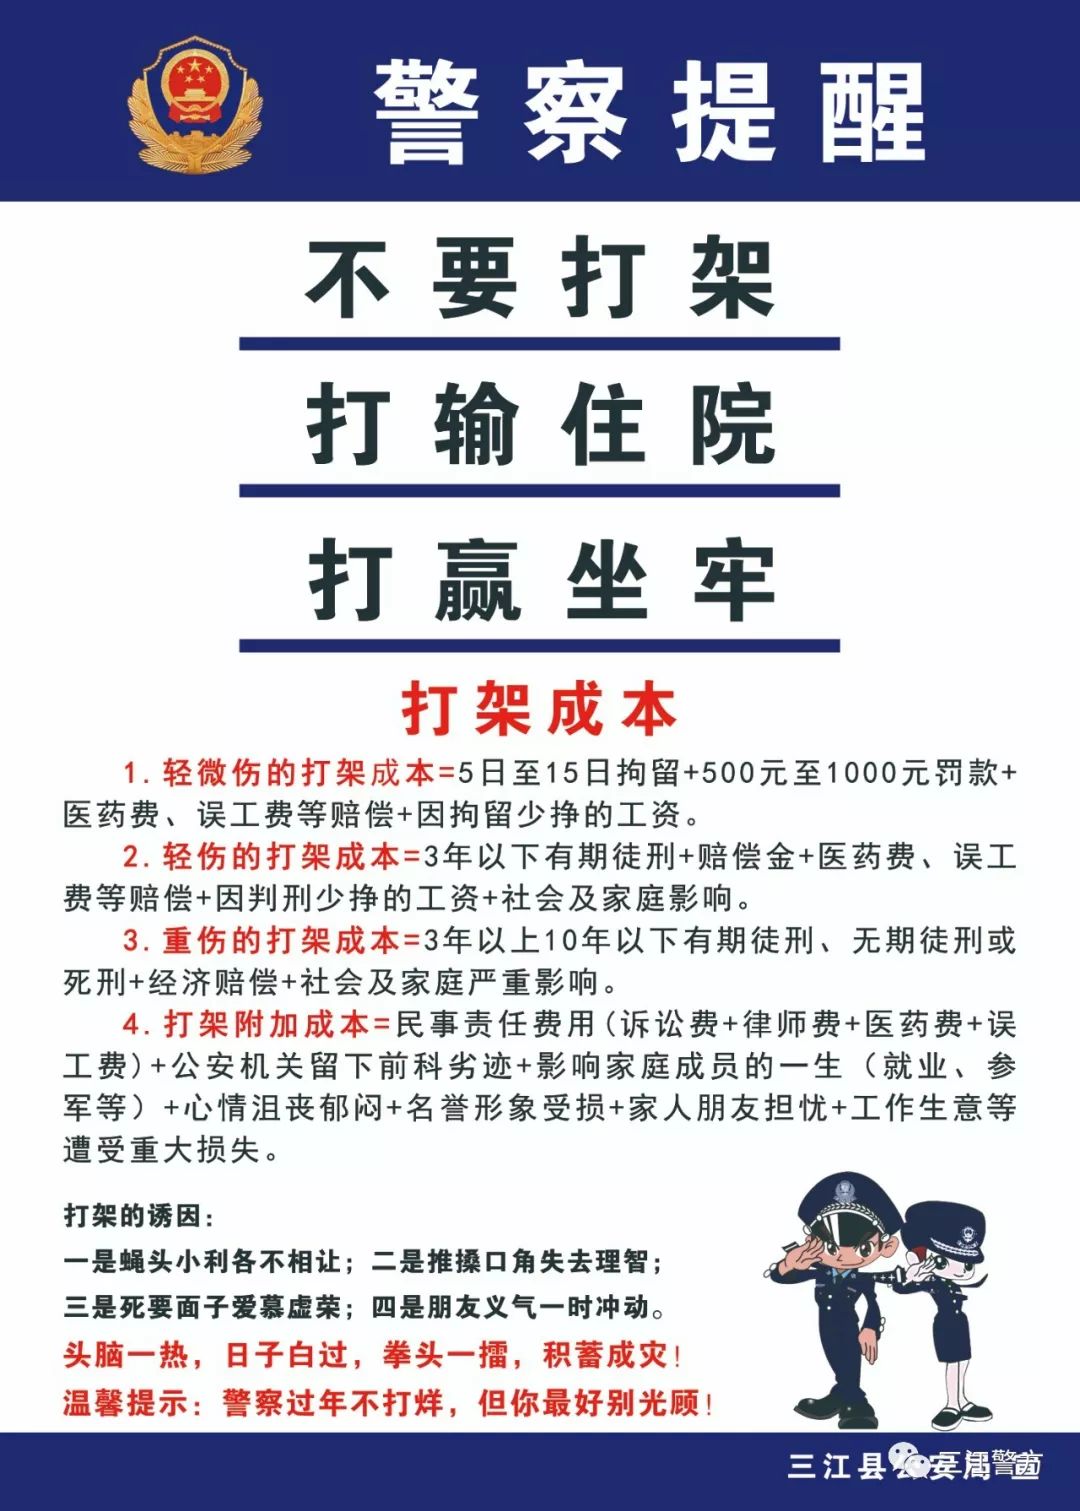 不要打架!三江警方发布2020年最新打架成本